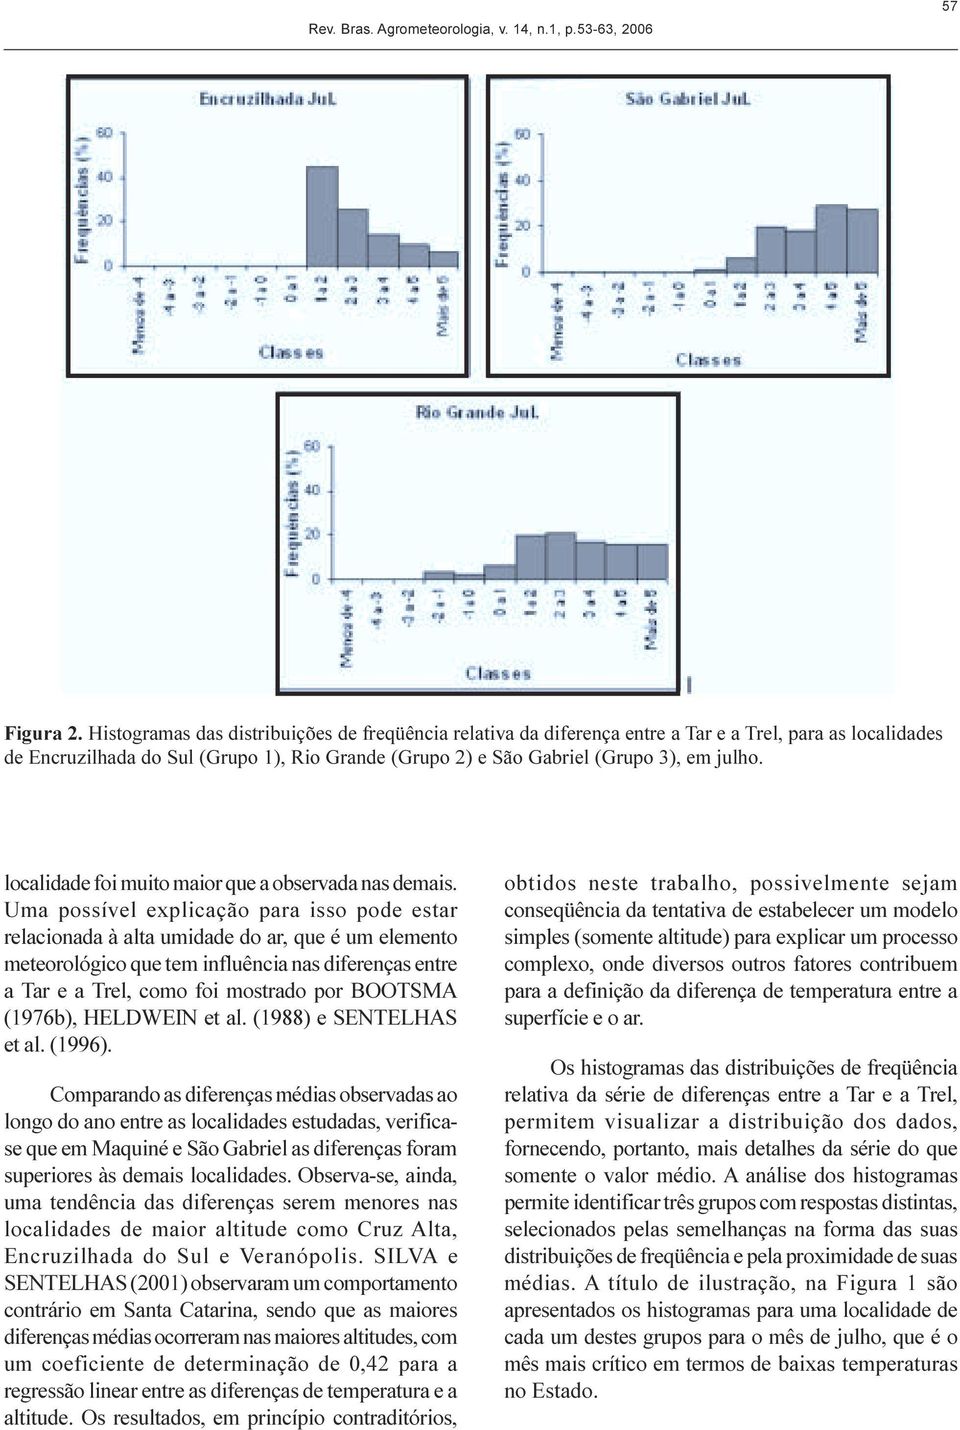 diferençs entre Tr e Trel, como foi mostrdo por BOOTSMA (196), ELEIN et l (1988) e SENTELAS et l (1996) Comprndo s diferençs médis oservds o longo do no entre s locliddes estudds, verificse que em